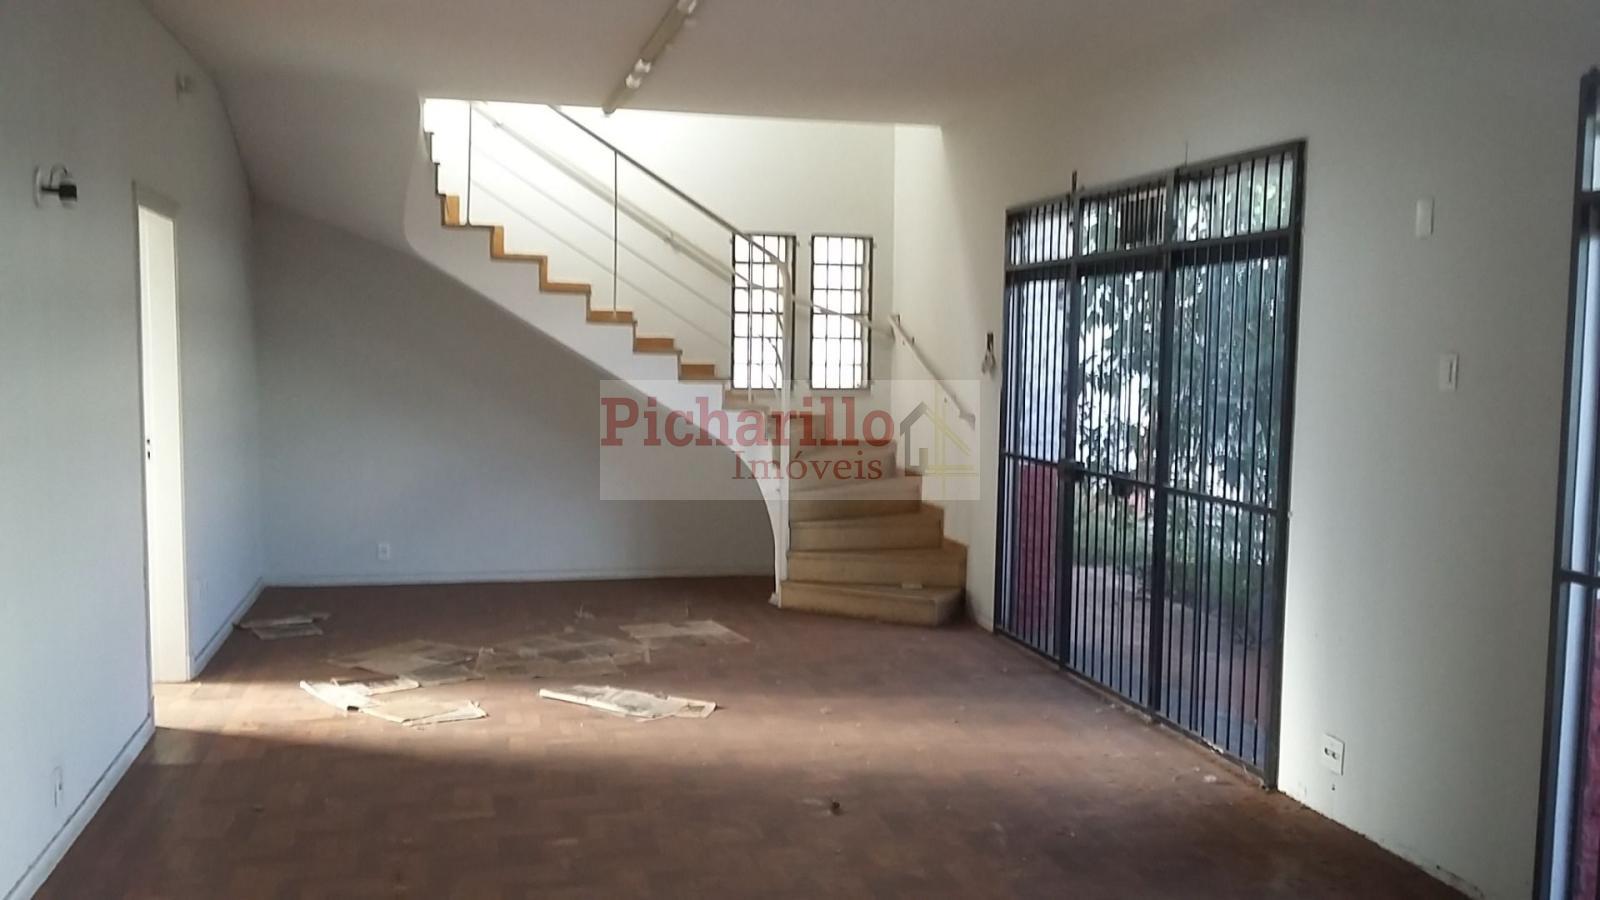 Casa à venda, 250 m² por R$ 690.000 - Centro - São Carlos/SP